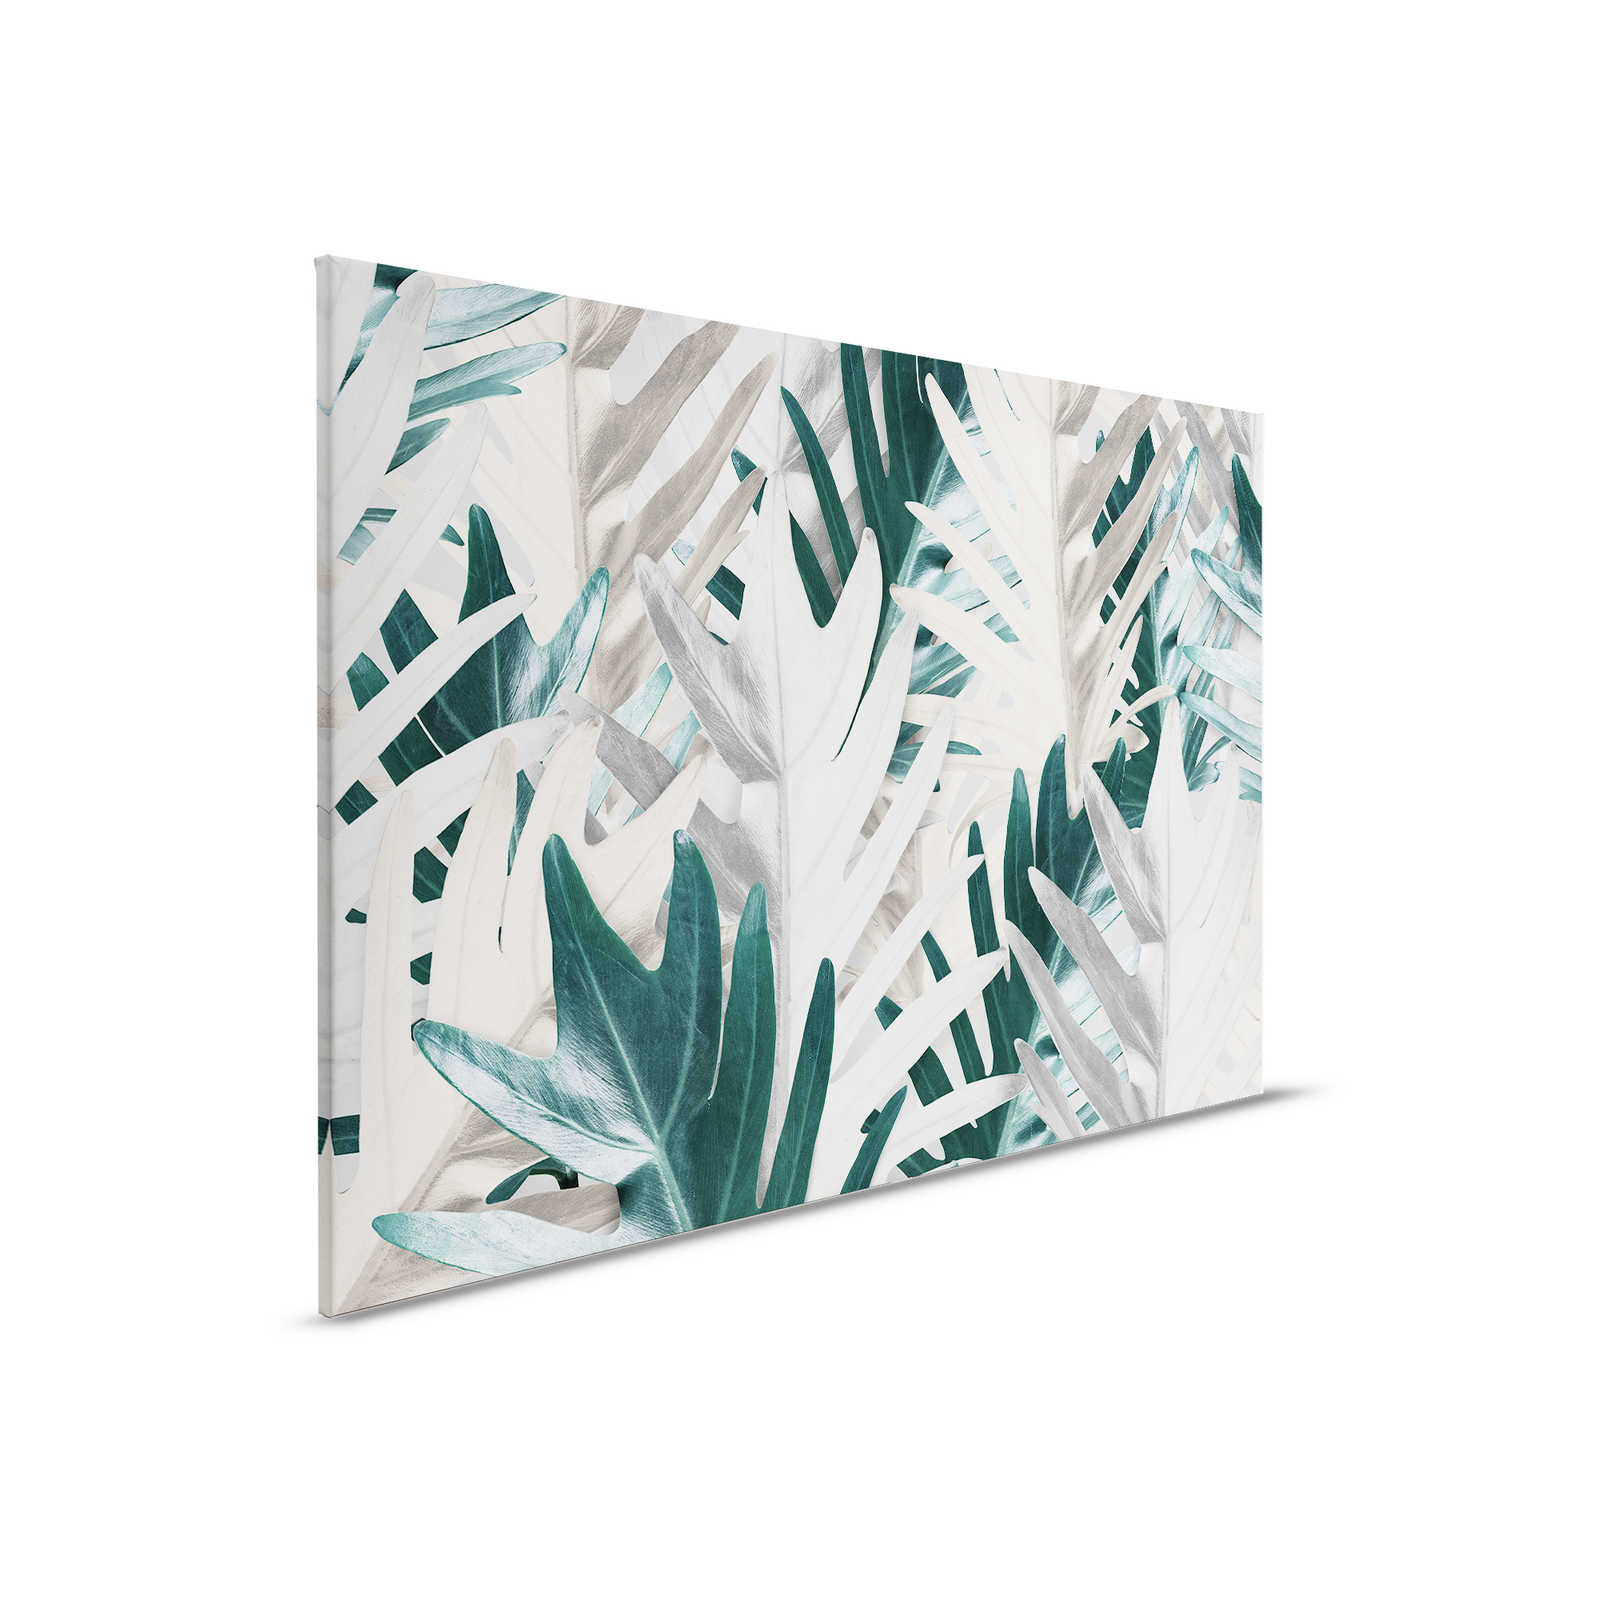 Cuadro en lienzo con hojas de palmera tropical - 0,90 m x 0,60 m
